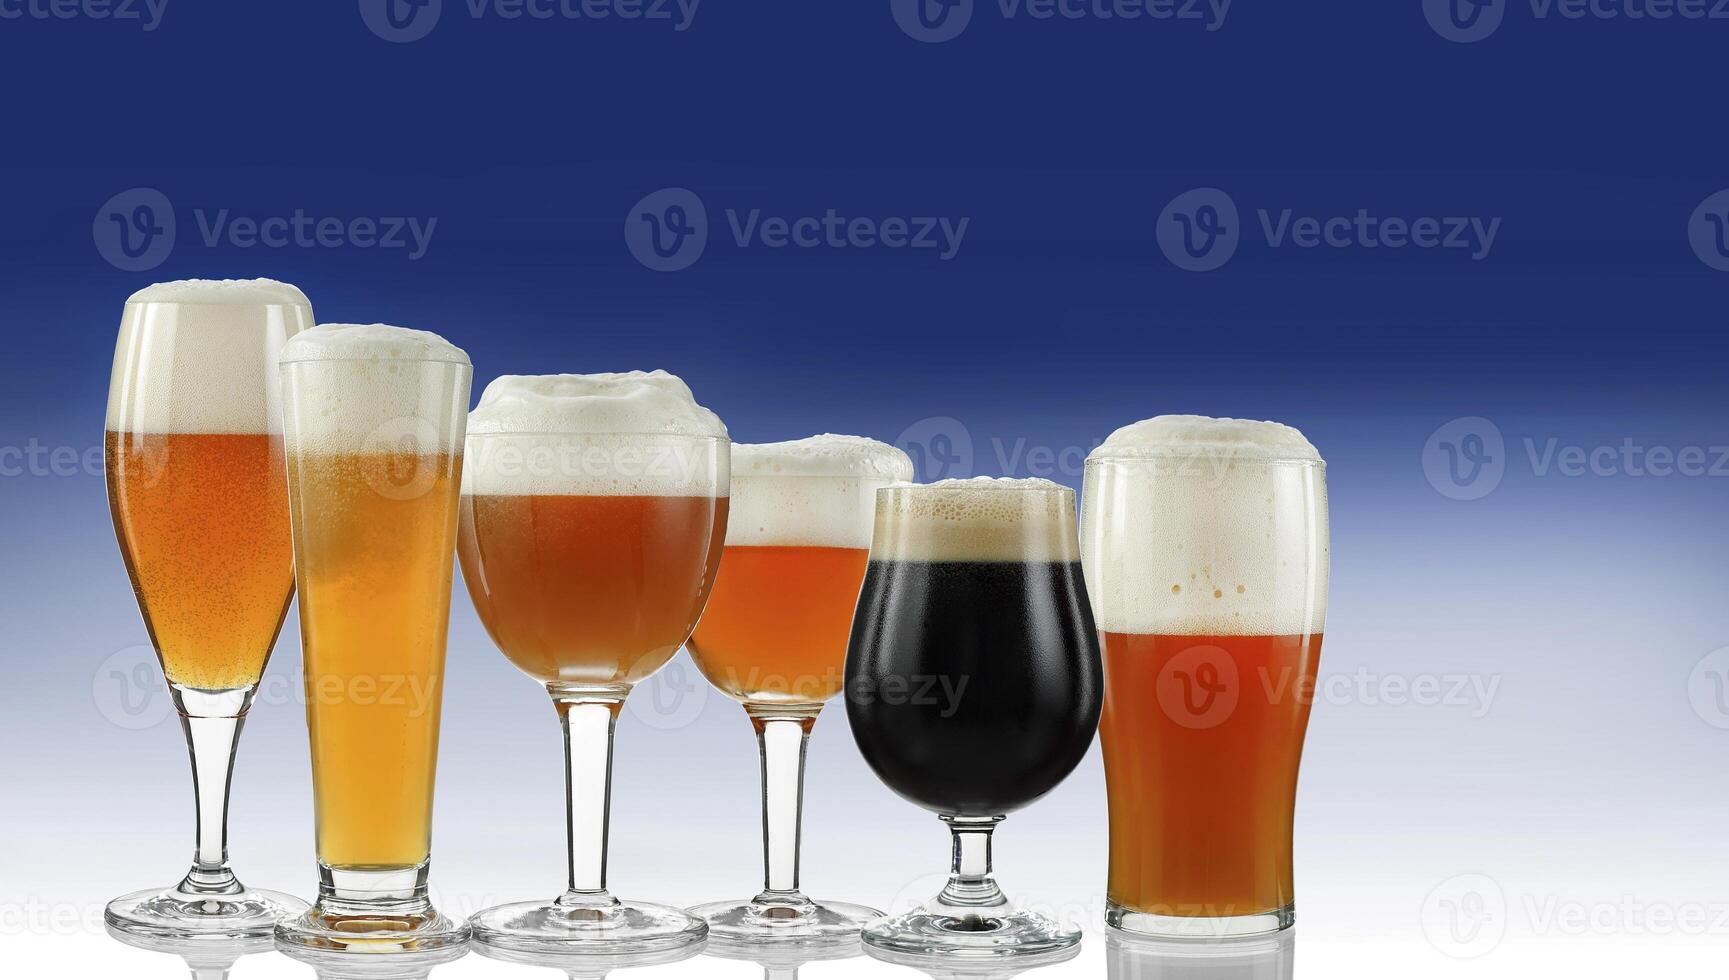 meerdere bieren wezen geserveerd in specifiek bril foto